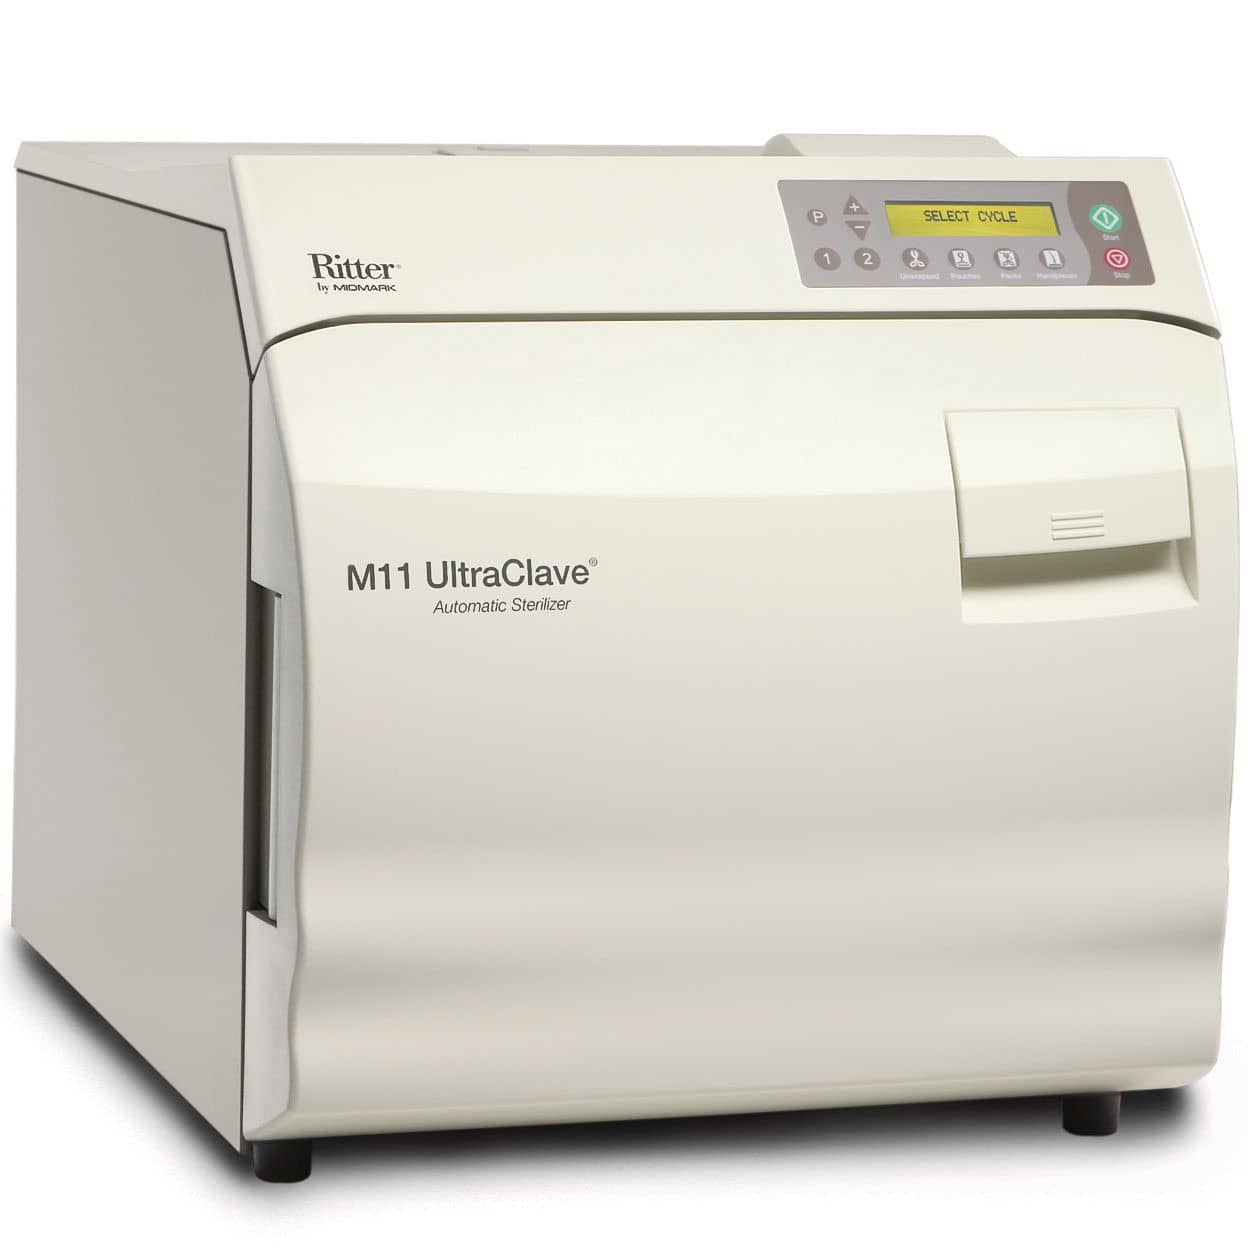 Ritter M11 UltraClave Automatic Sterilizer